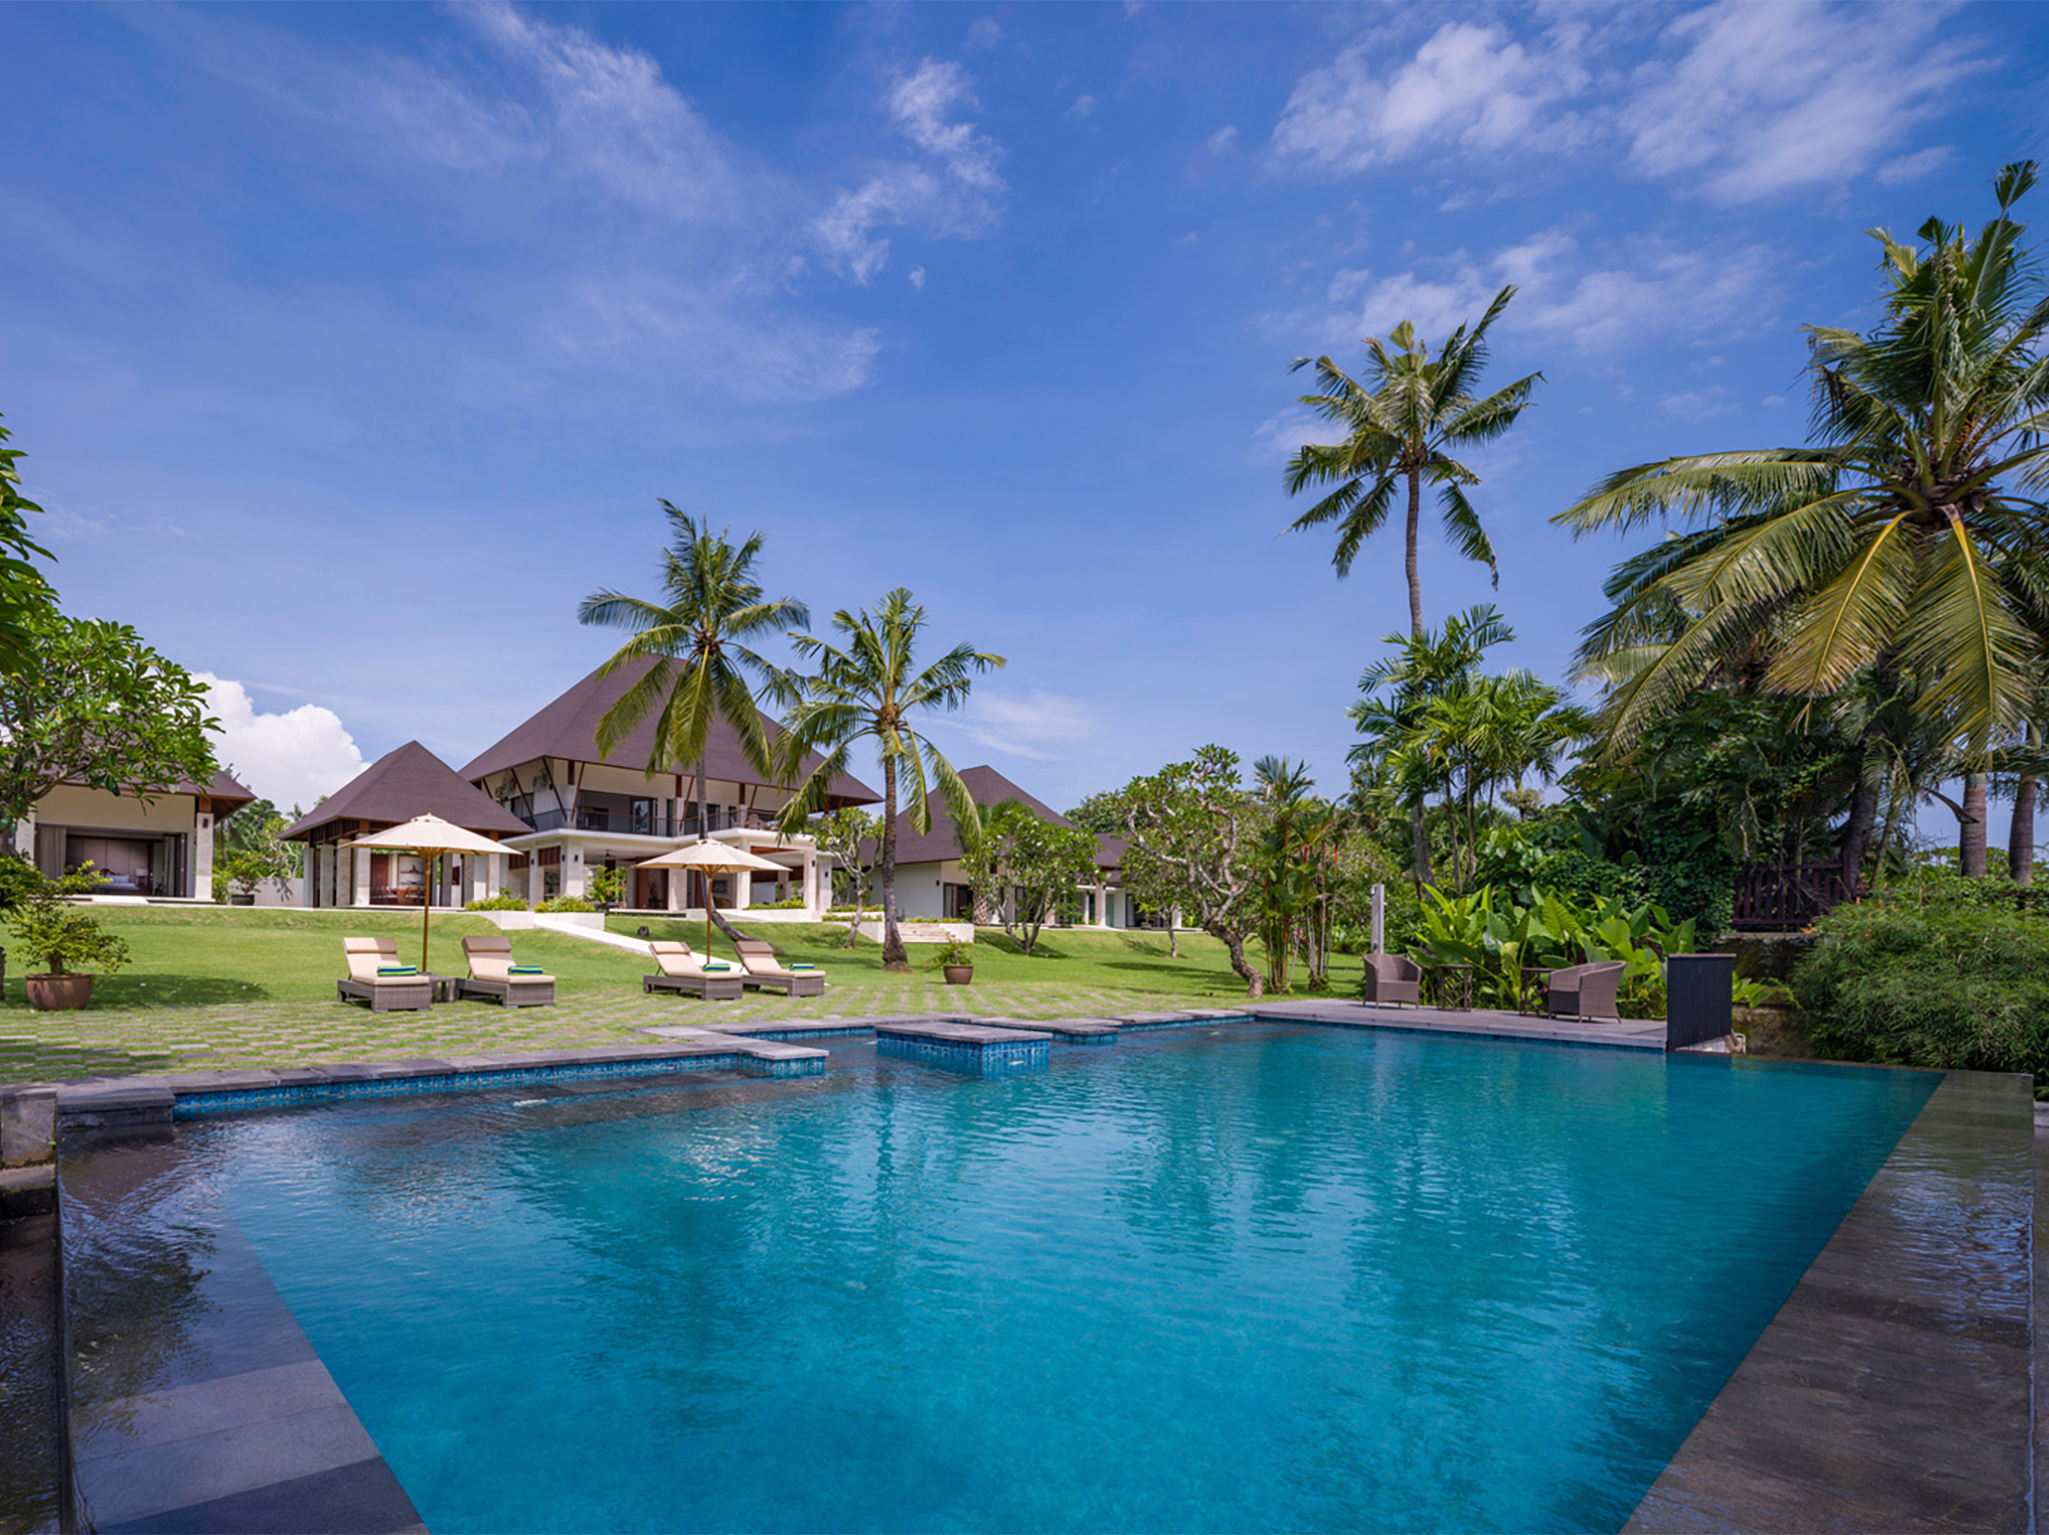 Villa Kailasha - Swimming pool and villa - Villa Kailasha, Tabanan, Bali